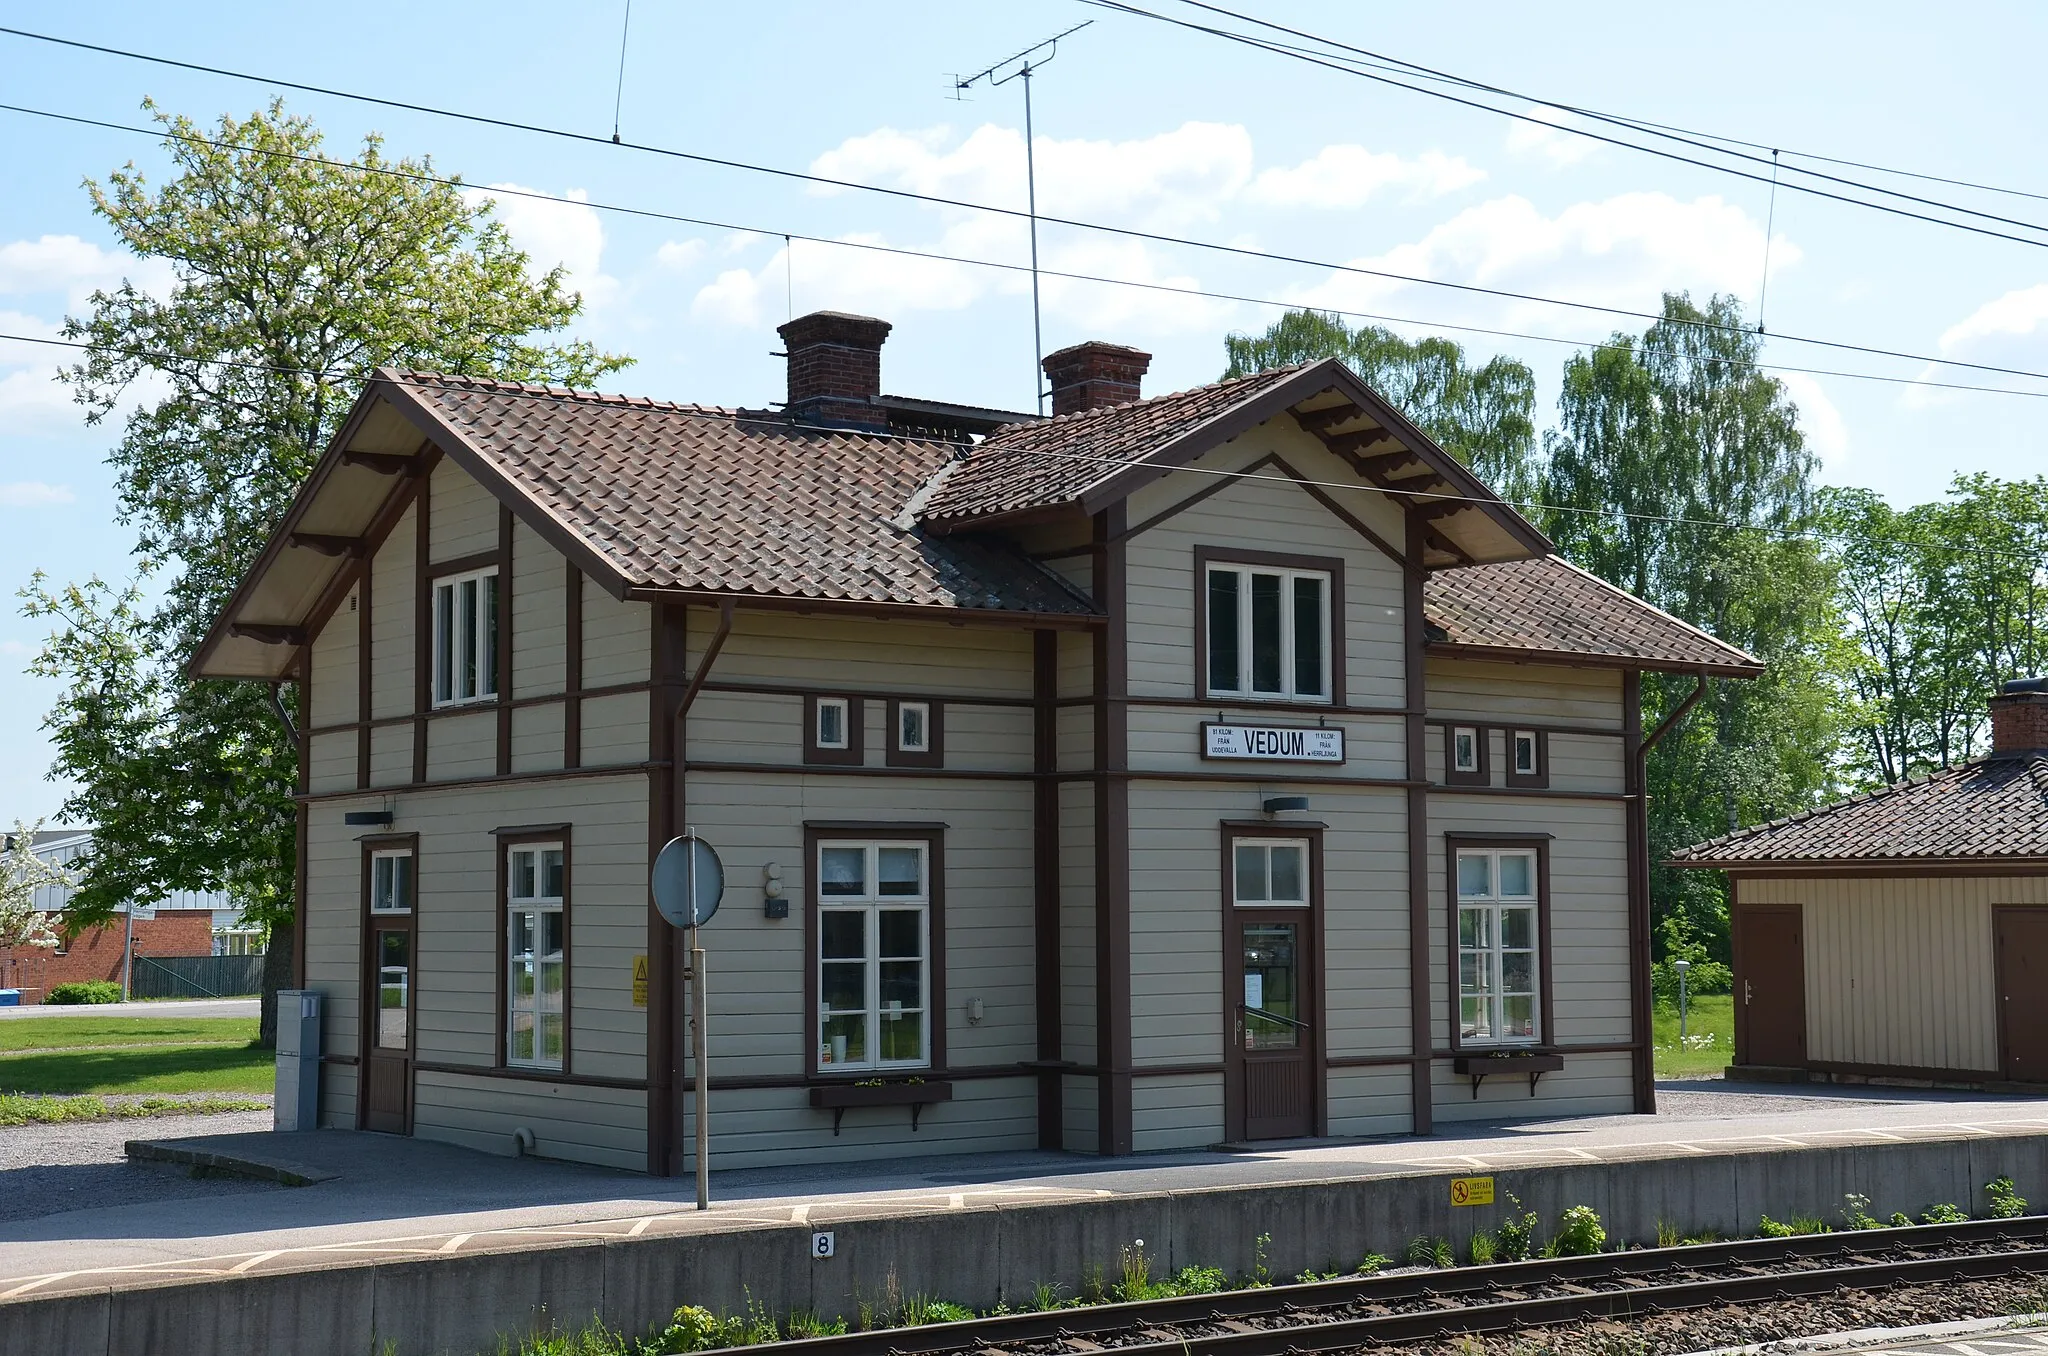 Photo showing: Vedum railway station, Sweden